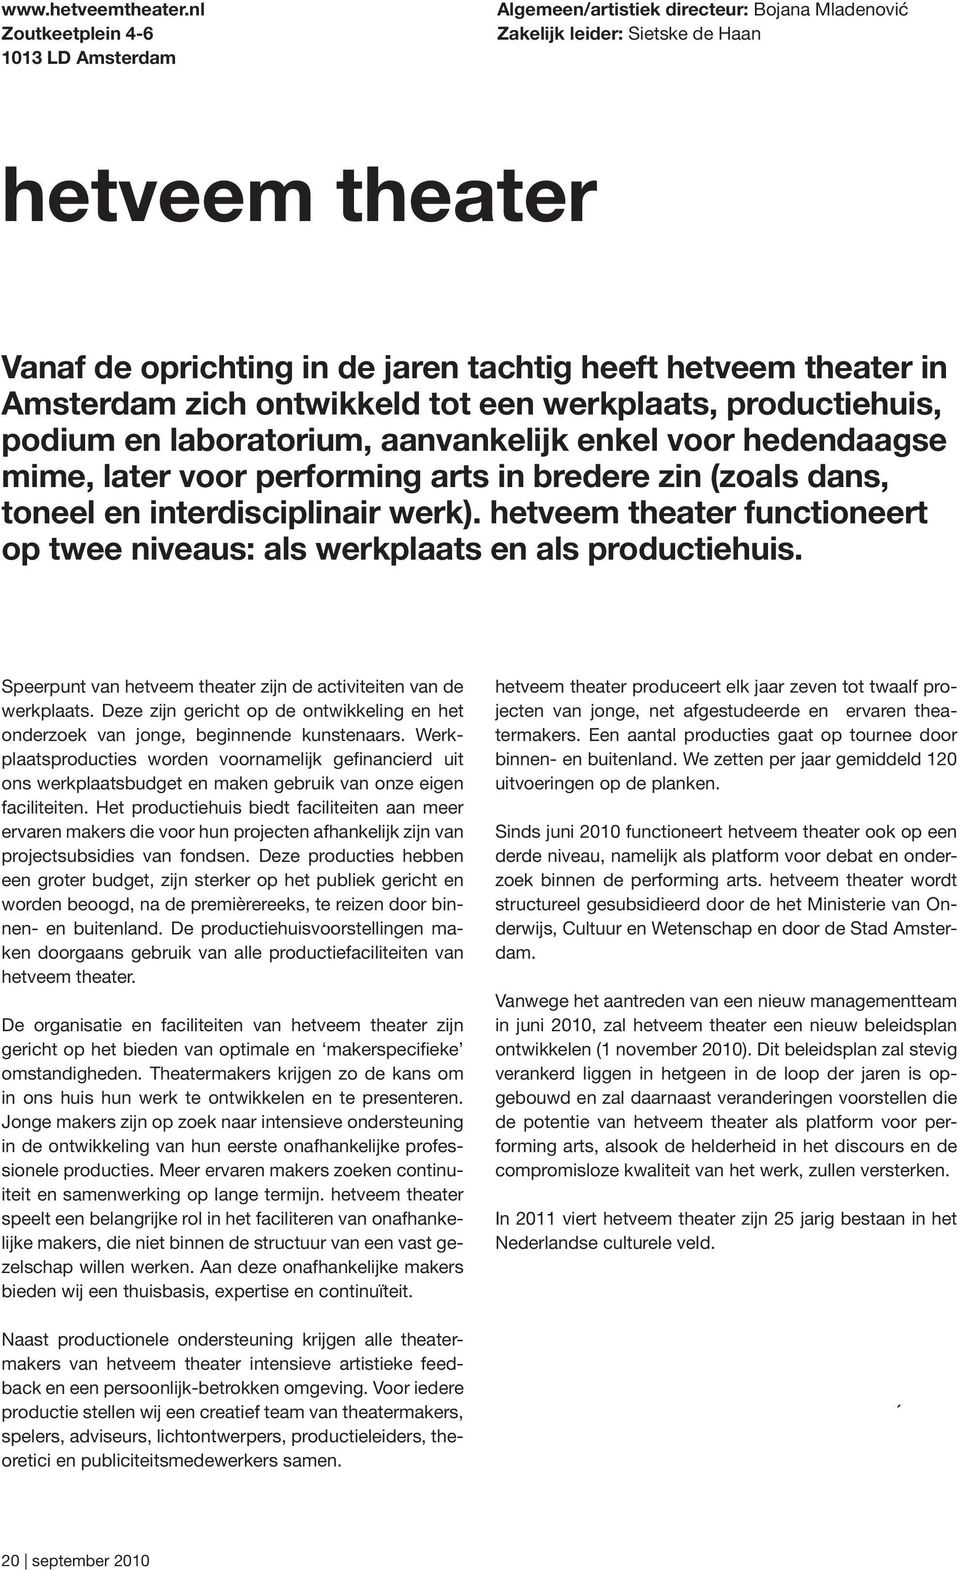 in Amsterdam zich ontwikkeld tot een werkplaats, productiehuis, podium en laboratorium, aanvankelijk enkel voor hedendaagse mime, later voor performing arts in bredere zin (zoals dans, toneel en